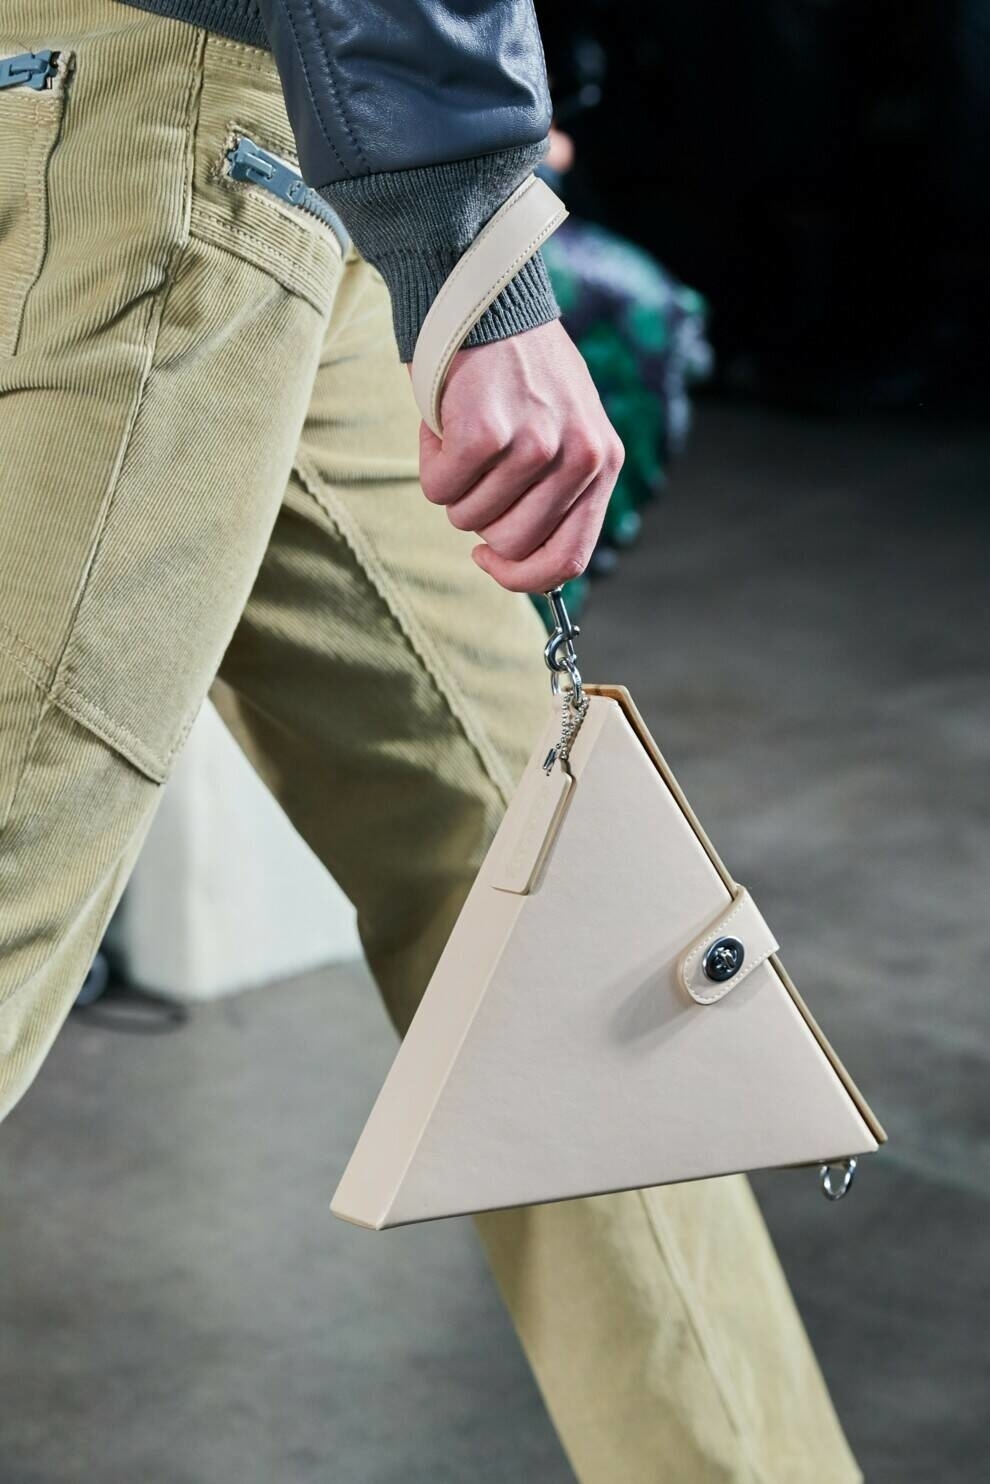 Круги, треугольники, квадраты — геометрические сумки в осенних коллекциях дизайнеров